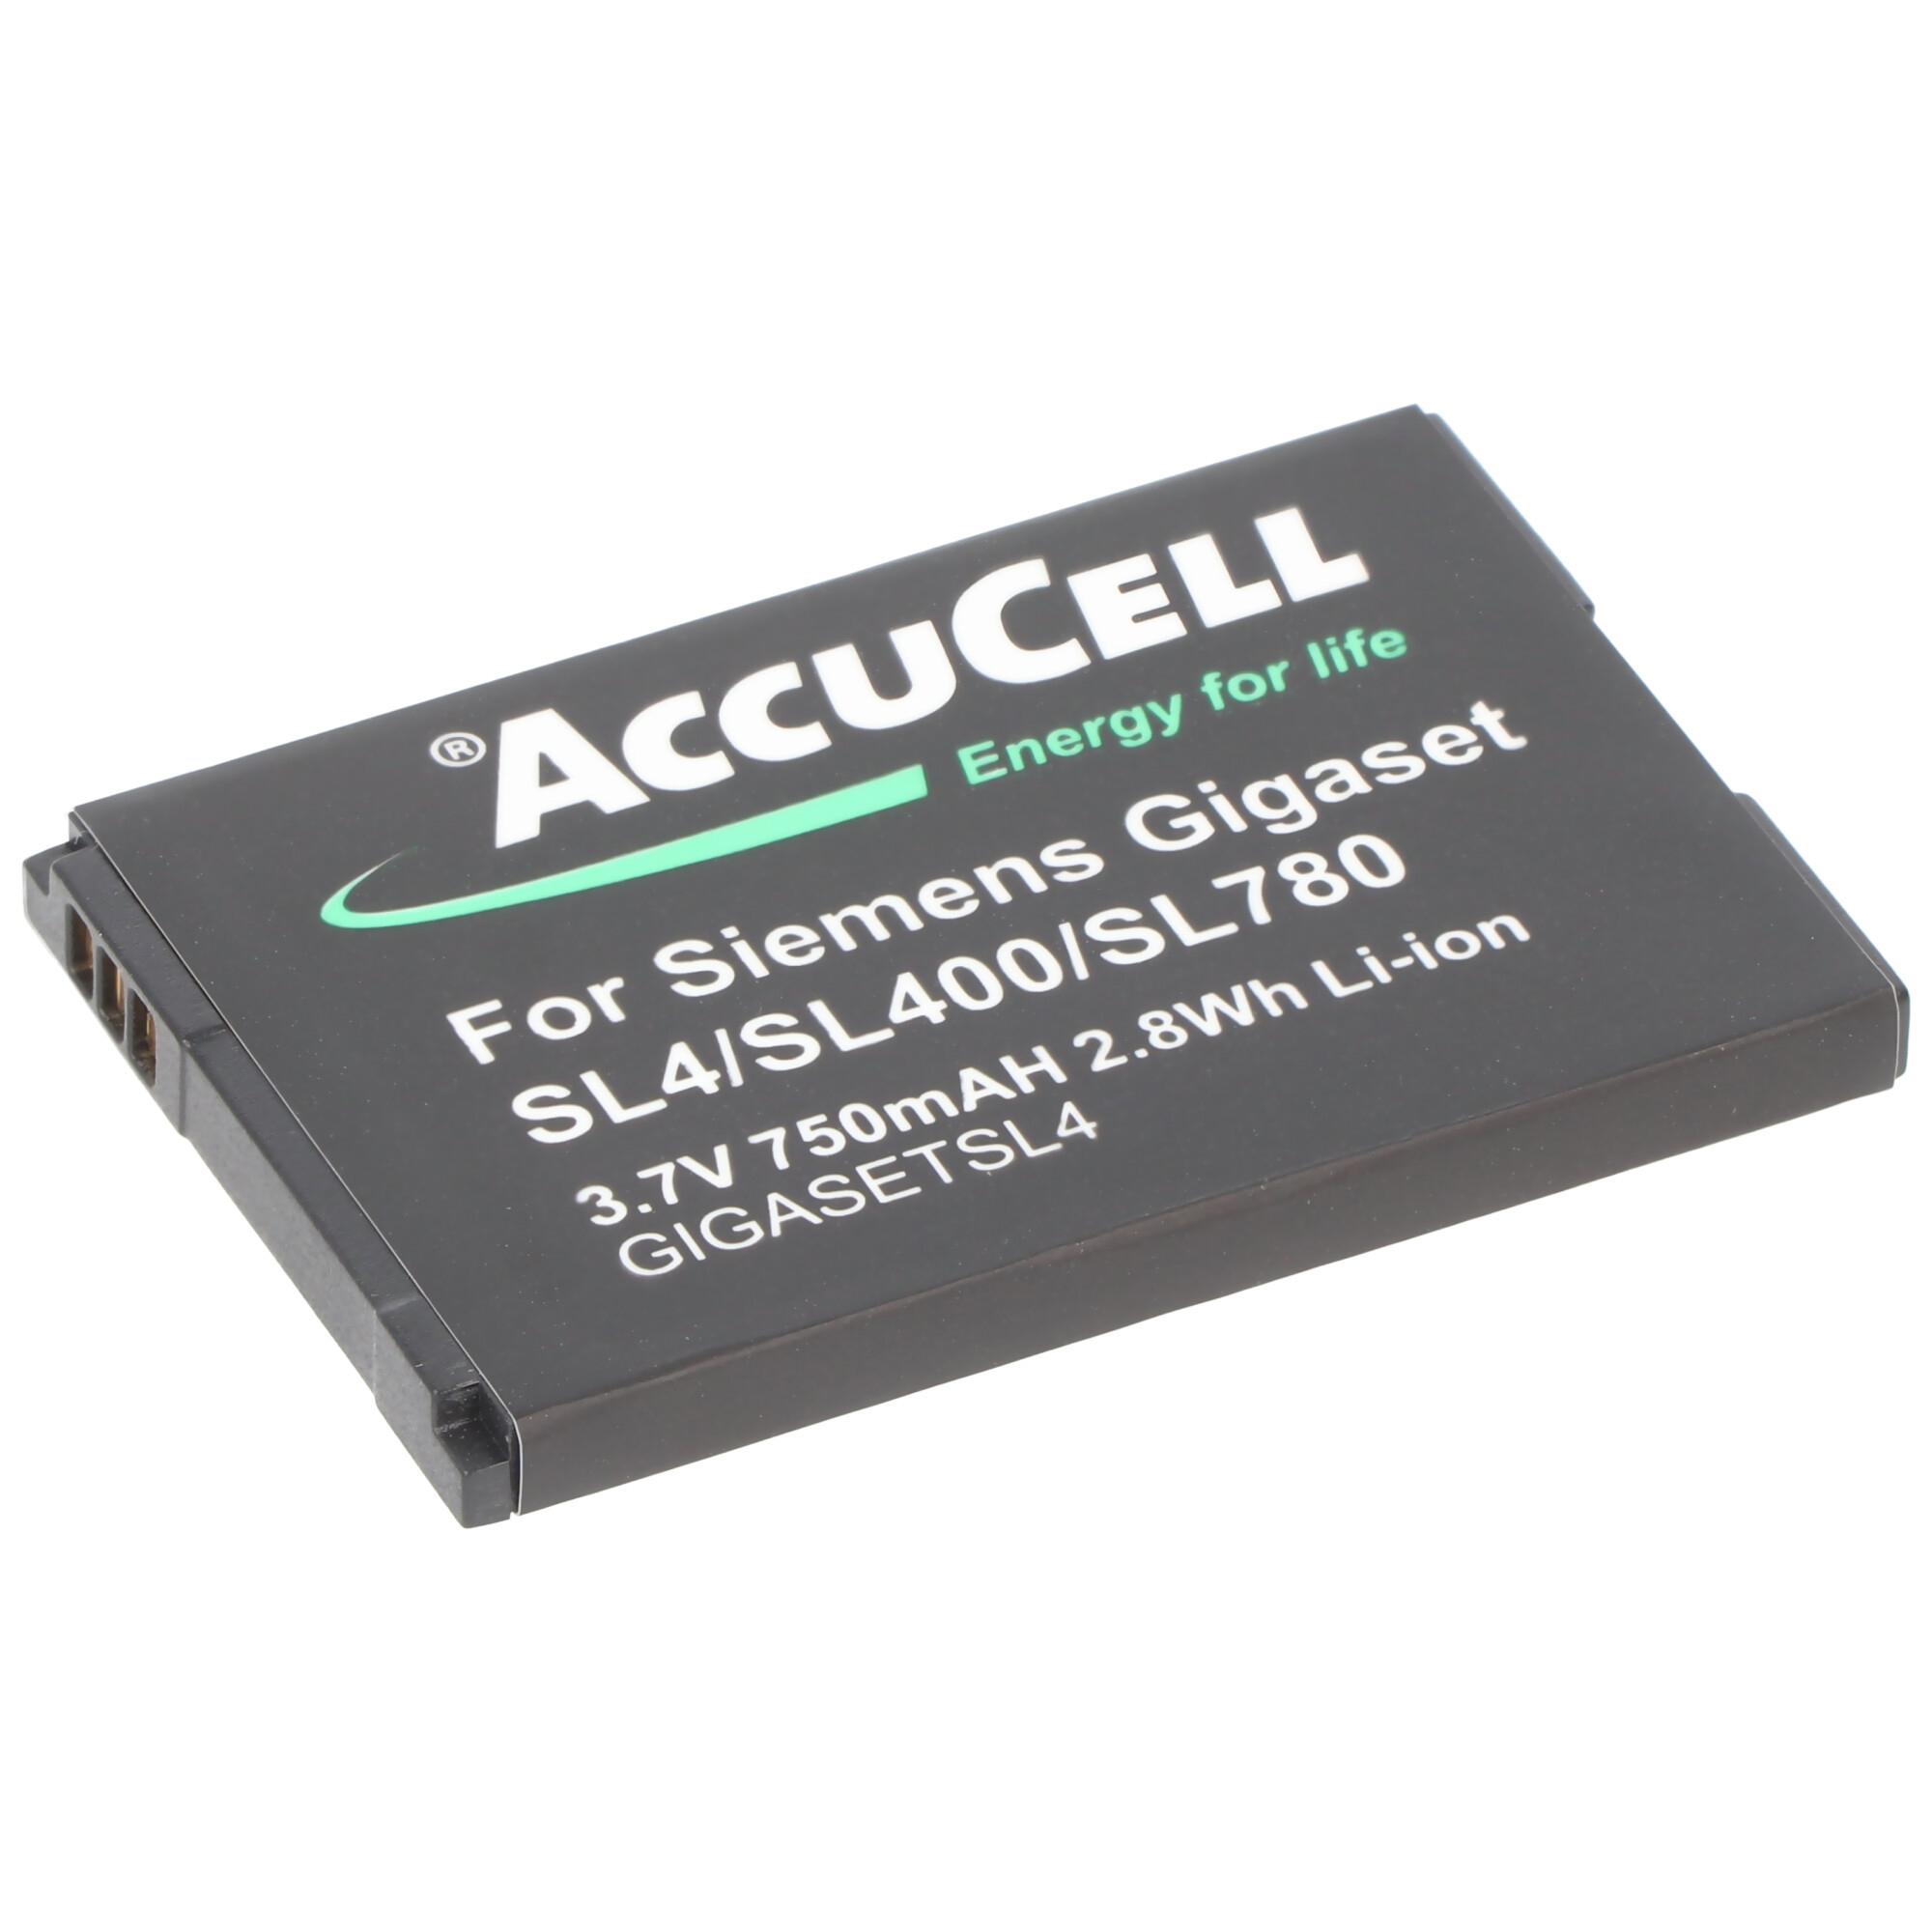 Batterie AccuCell pour Siemens SL4, SL400, SL78, SL780, SL785